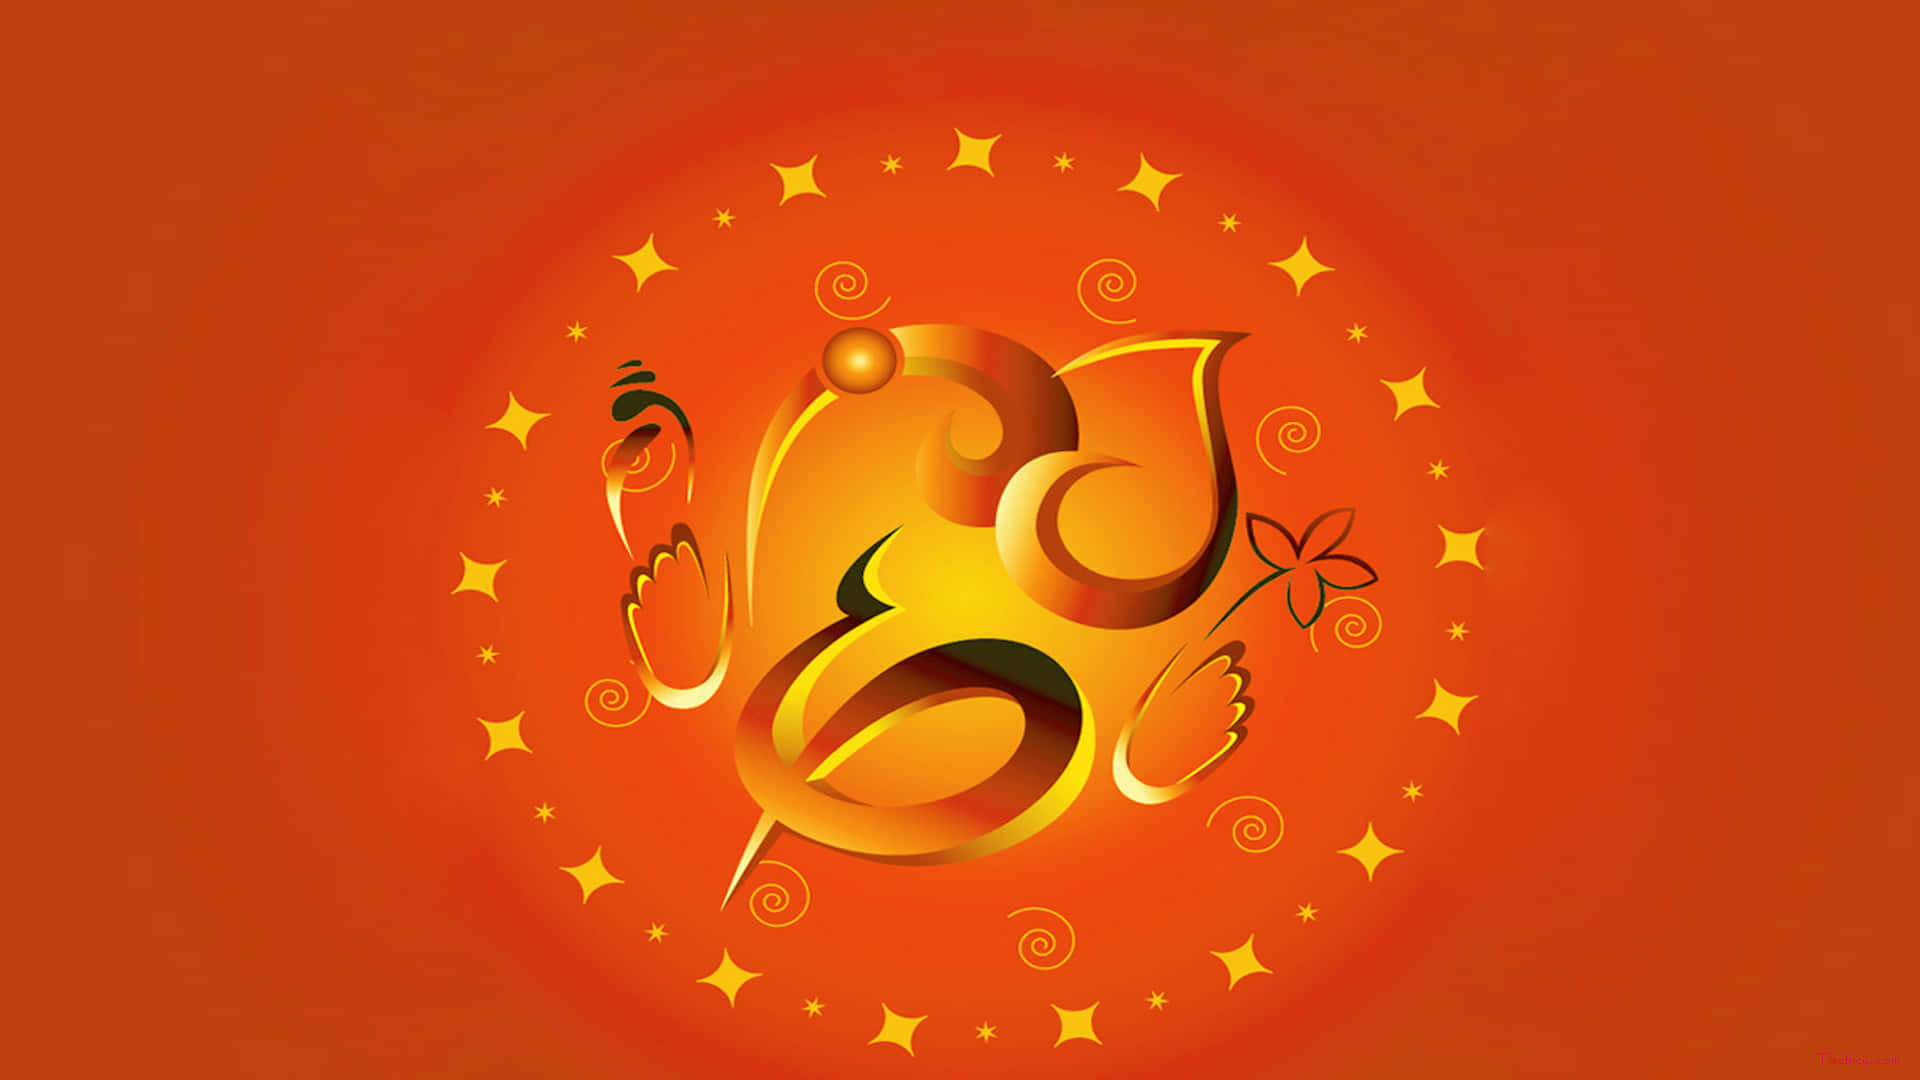 A Golden Om Symbol On An Orange Background